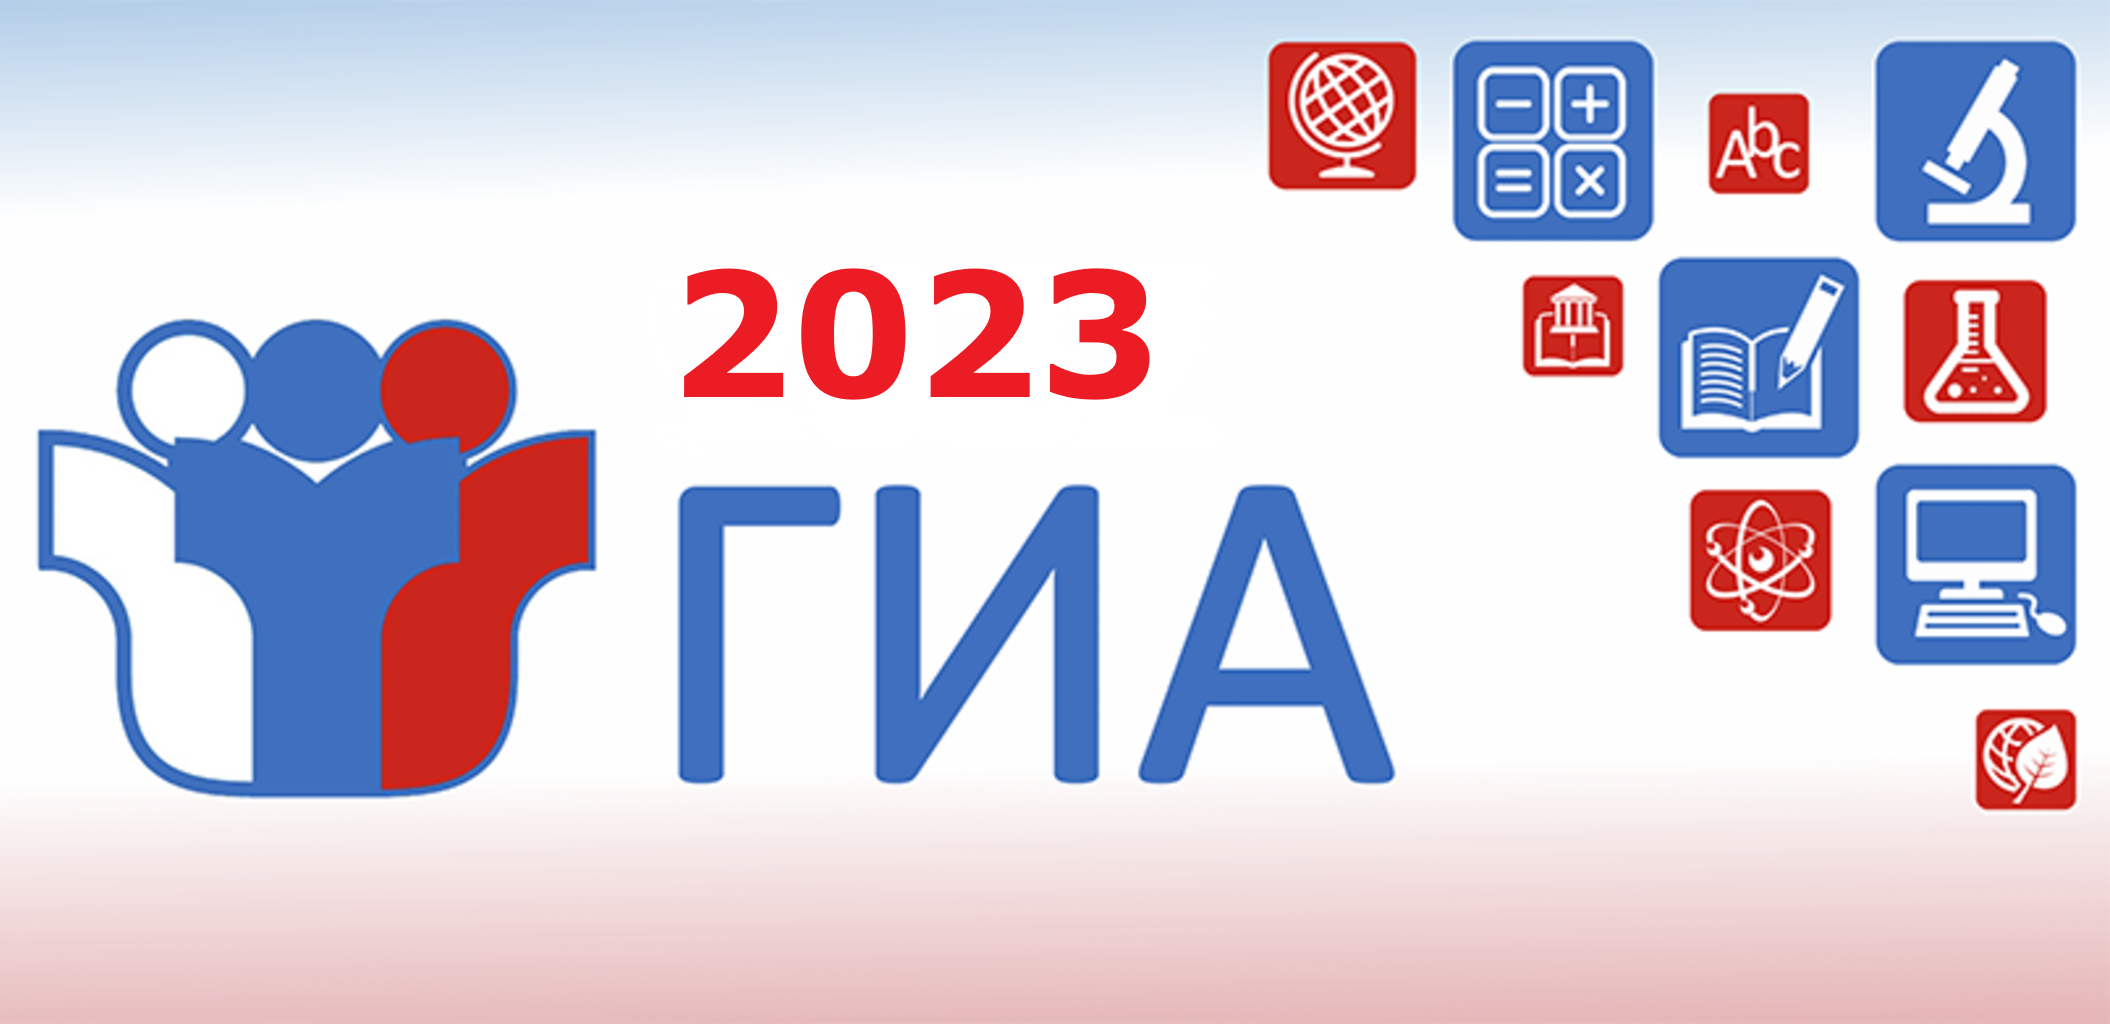 Еду 2024 рустест. ГИА 2023. Эмблема ГИА 2023. ГИА логотип. Баннер ГИА 2023.